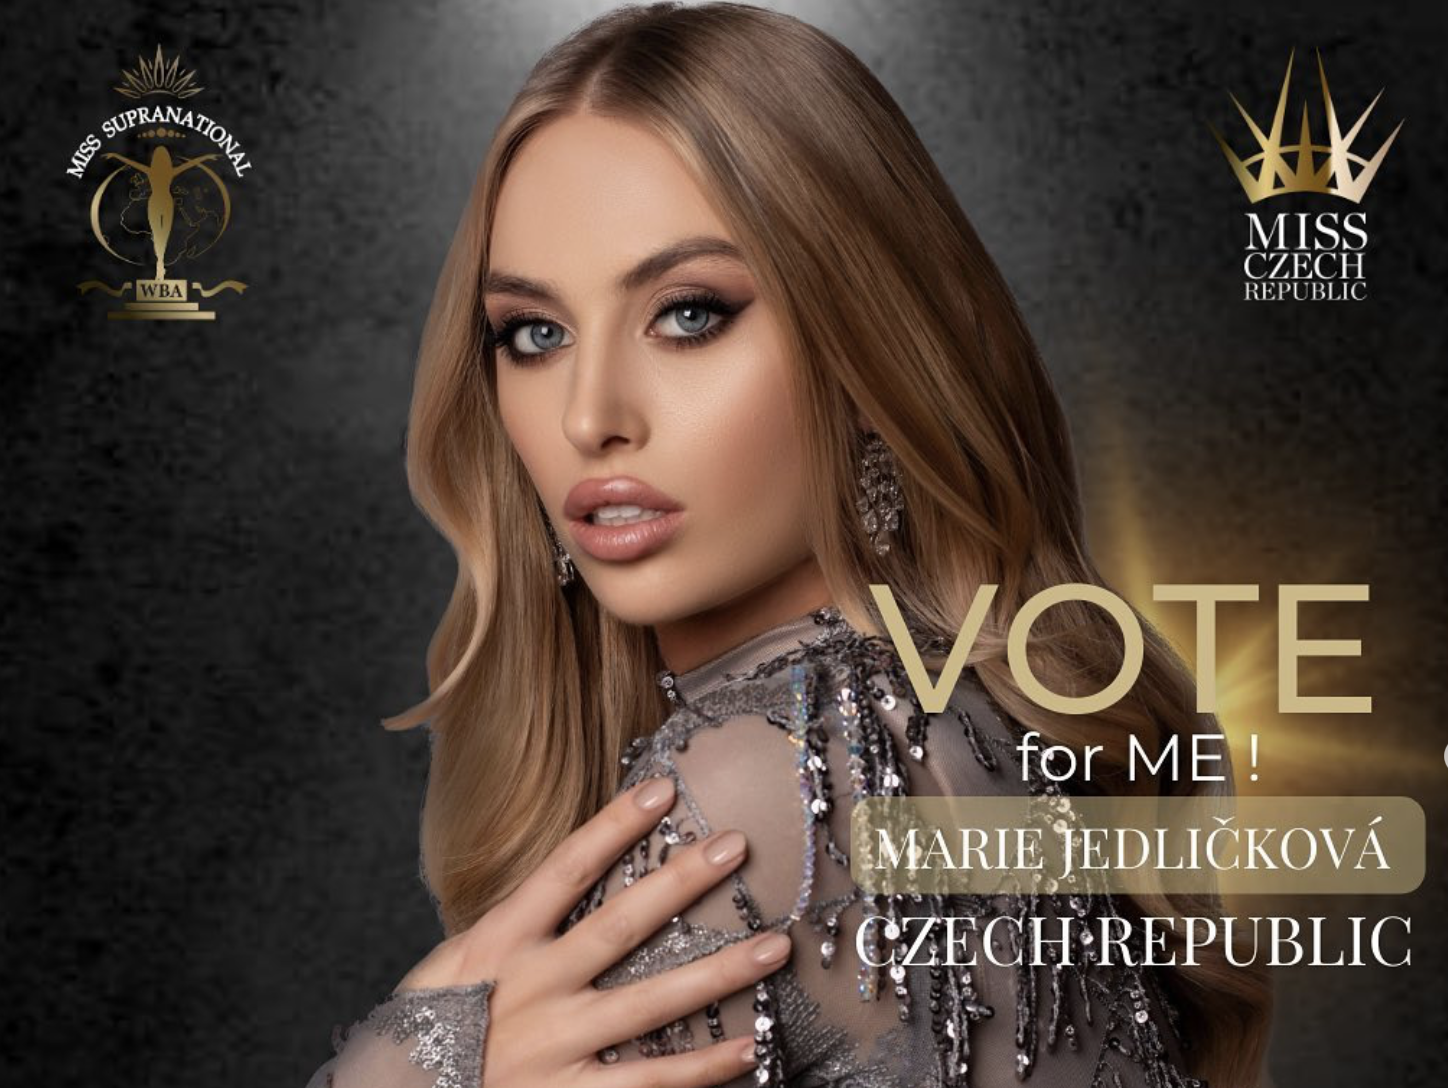 Hlasujte a podpořte Marii Jedličovou na Miss Supranational 2023